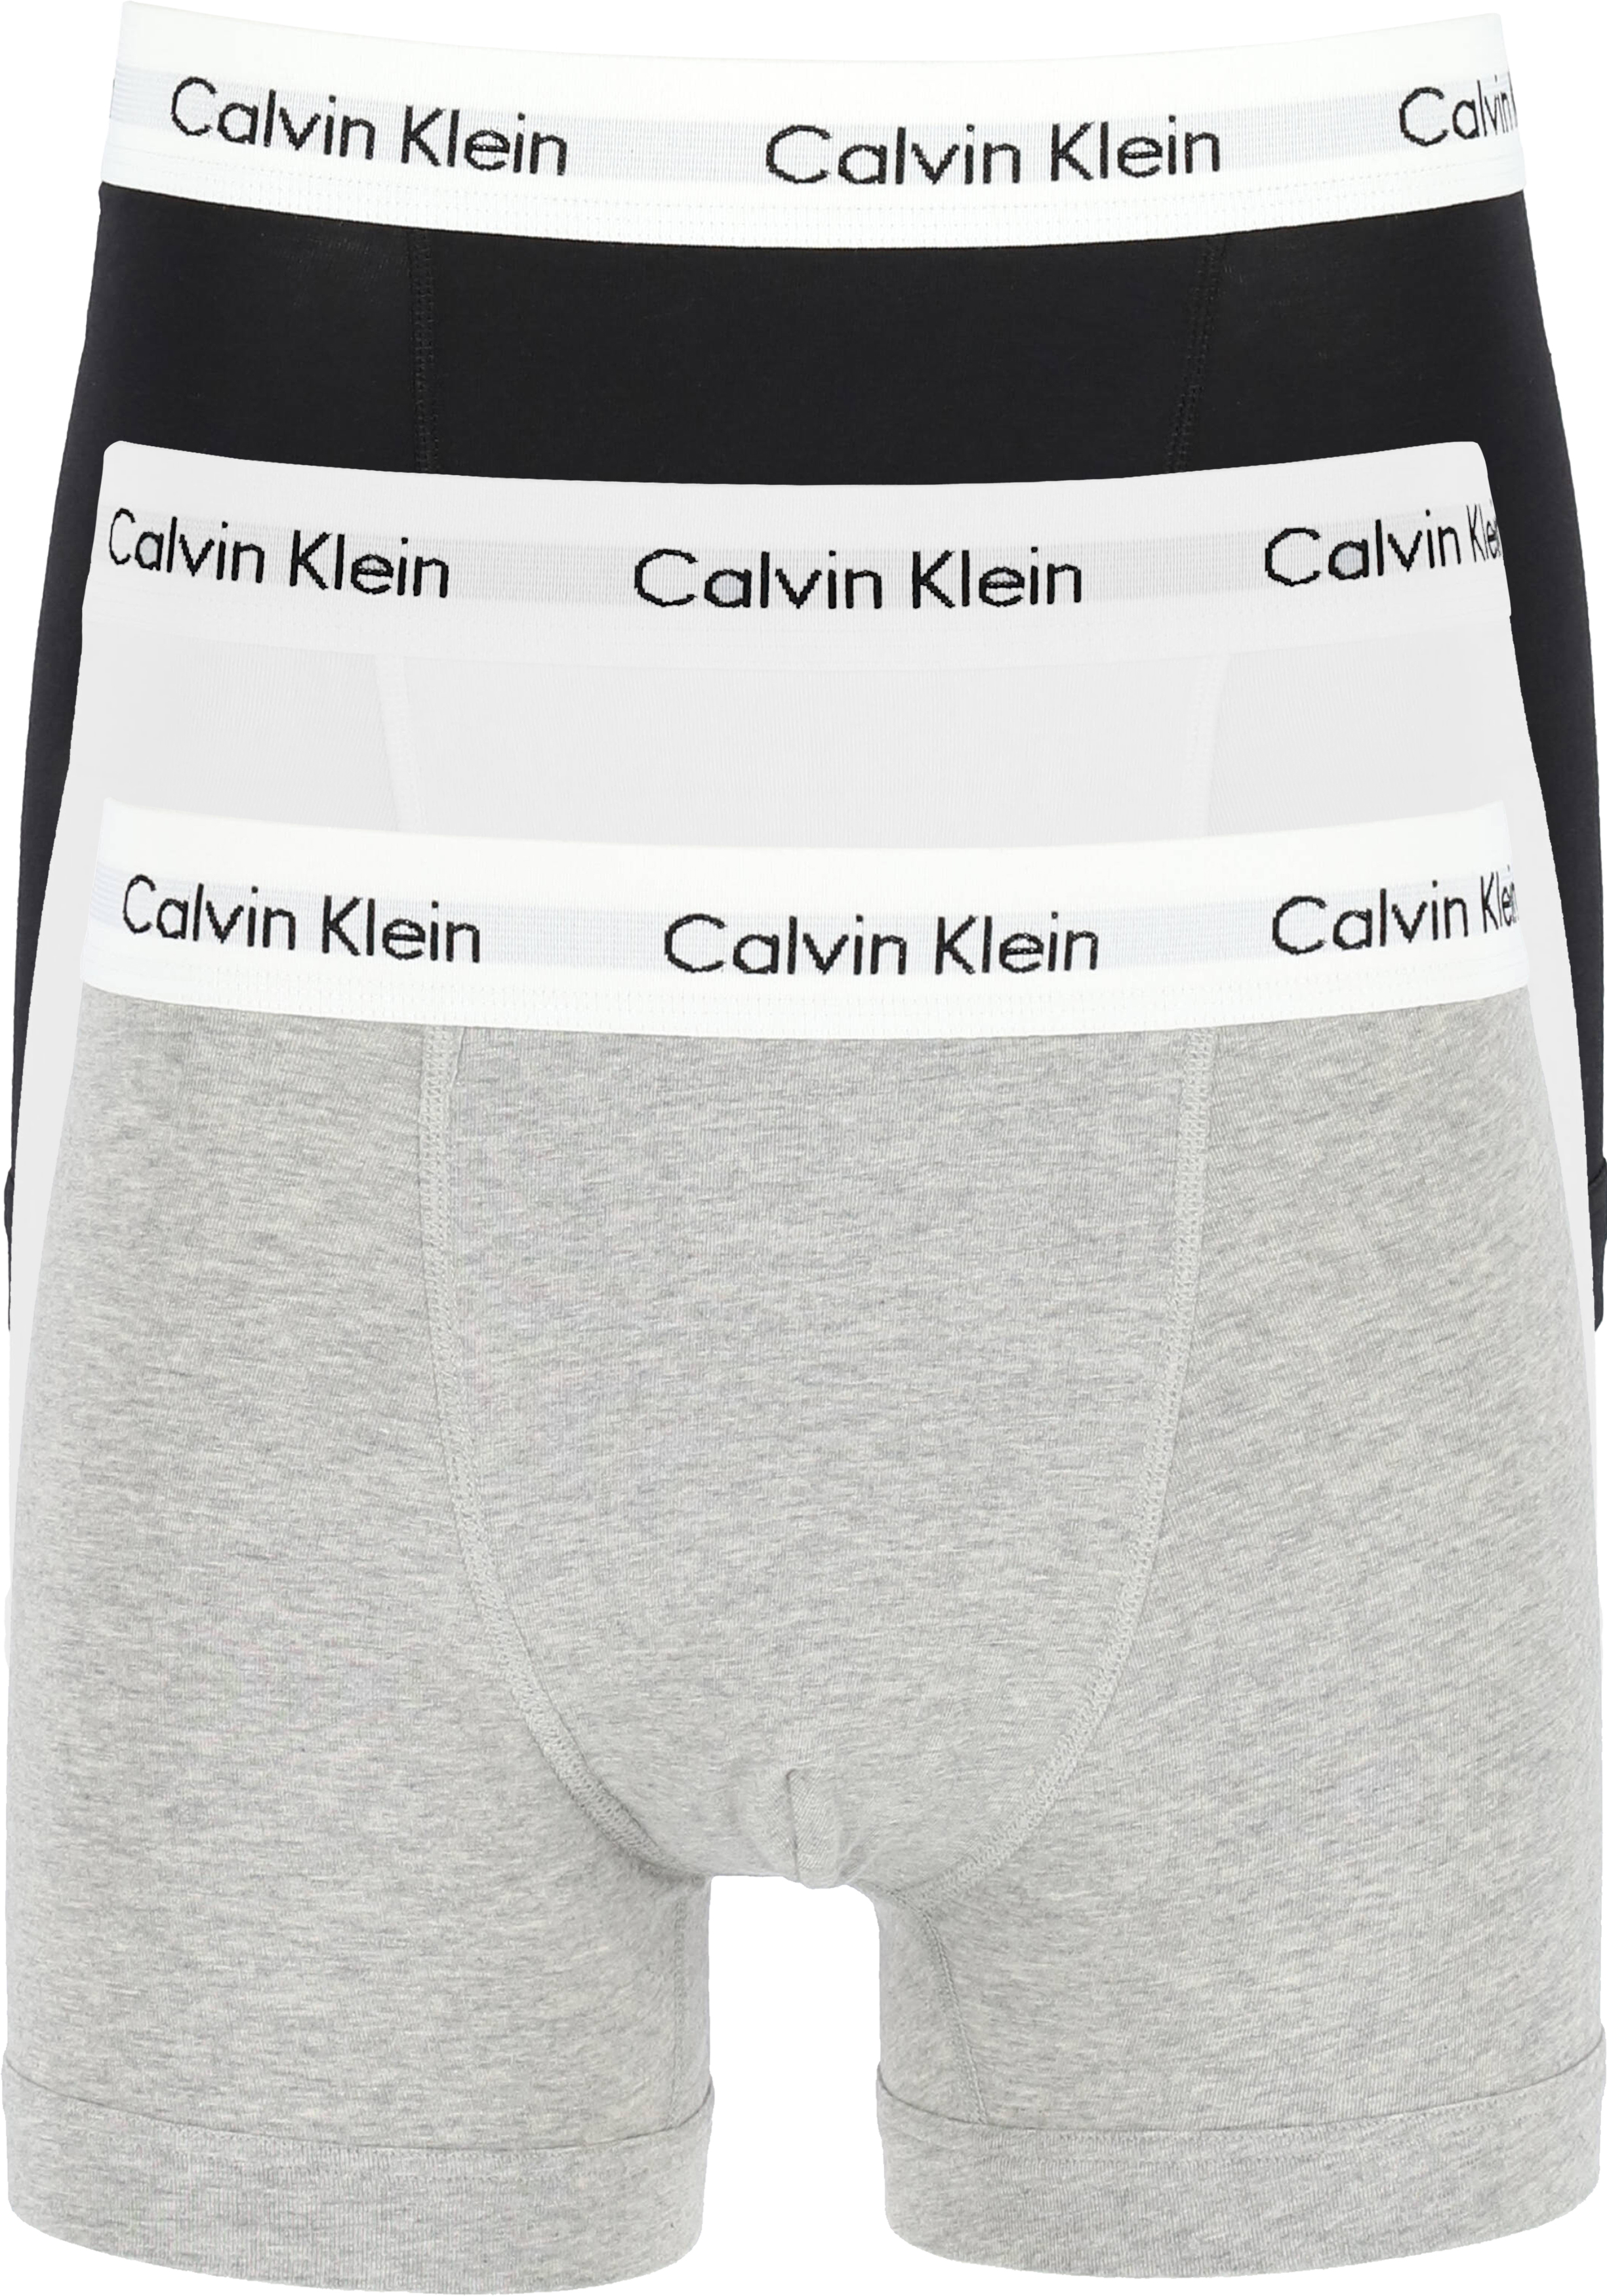 Calvin Klein trunks (3-pack), heren boxers normale lengte, zwart, grijs en wit